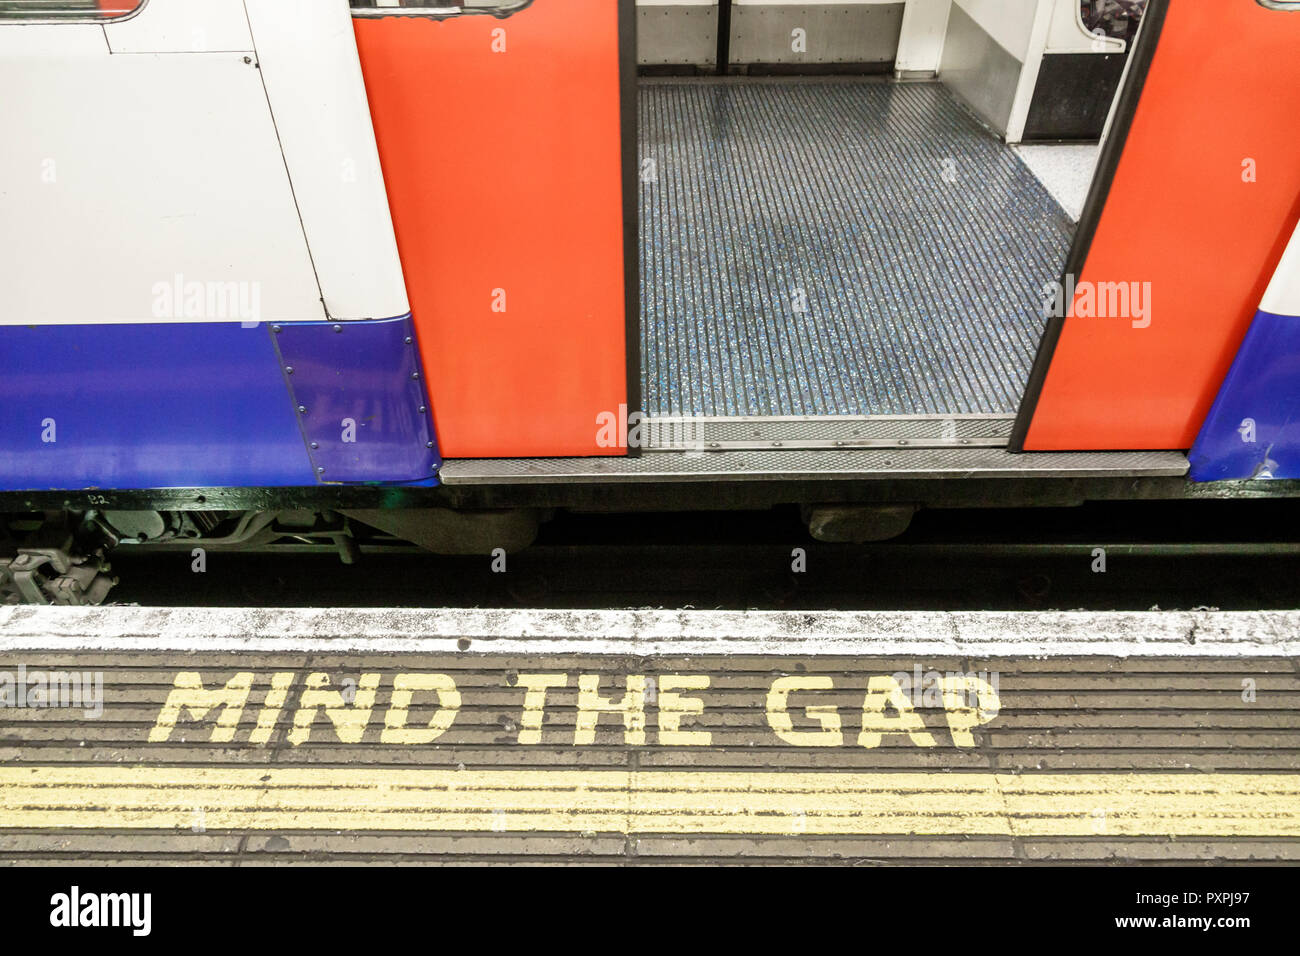 London England,UK,Lambeth South Bank,Waterloo Station,underground subway tube,platform,train,mind the gap,safety warning,floor markings,UK GB English Stock Photo